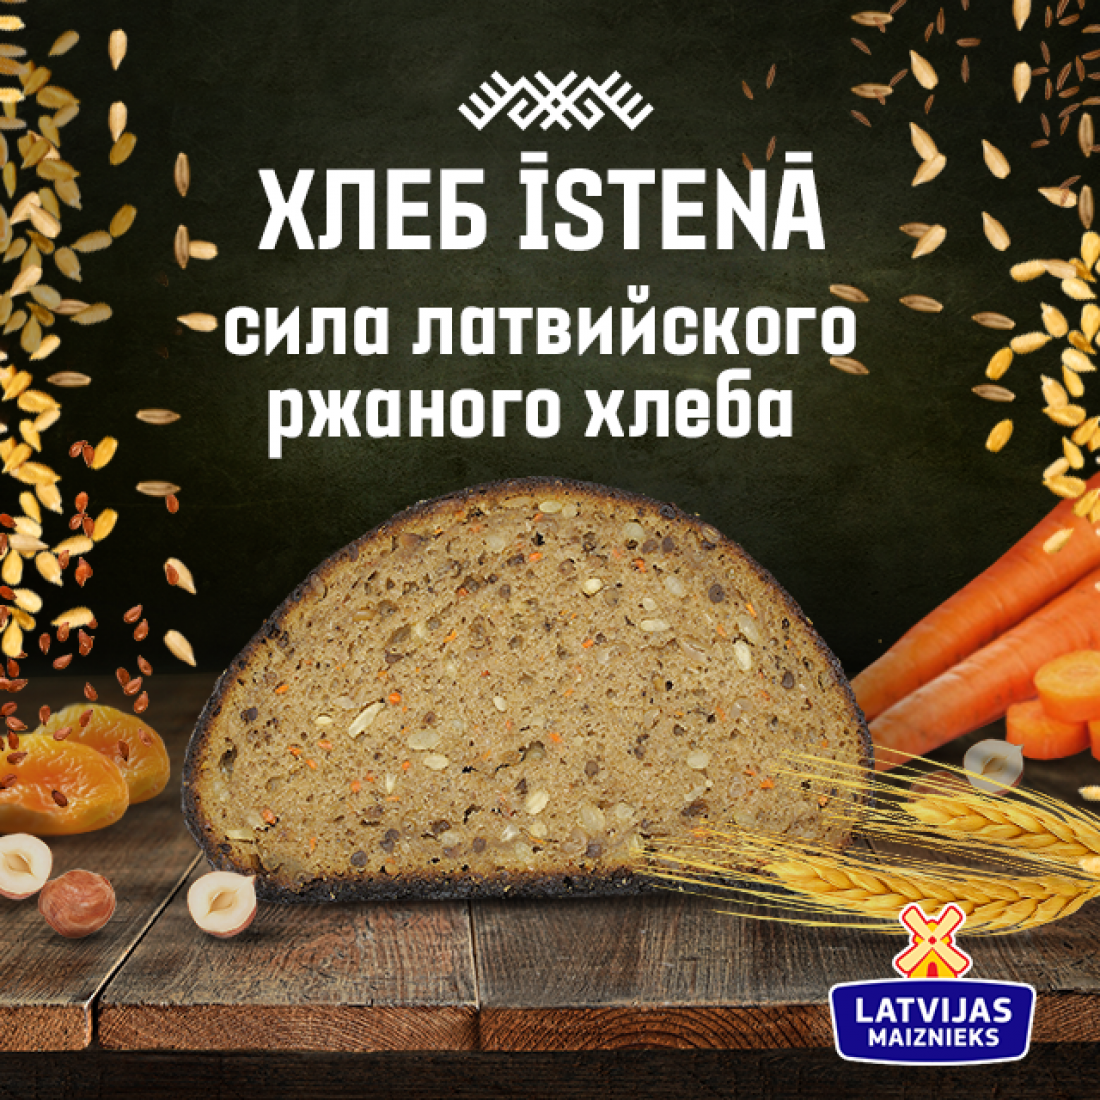 Īstenā - сила латвийского ржаного хлеба